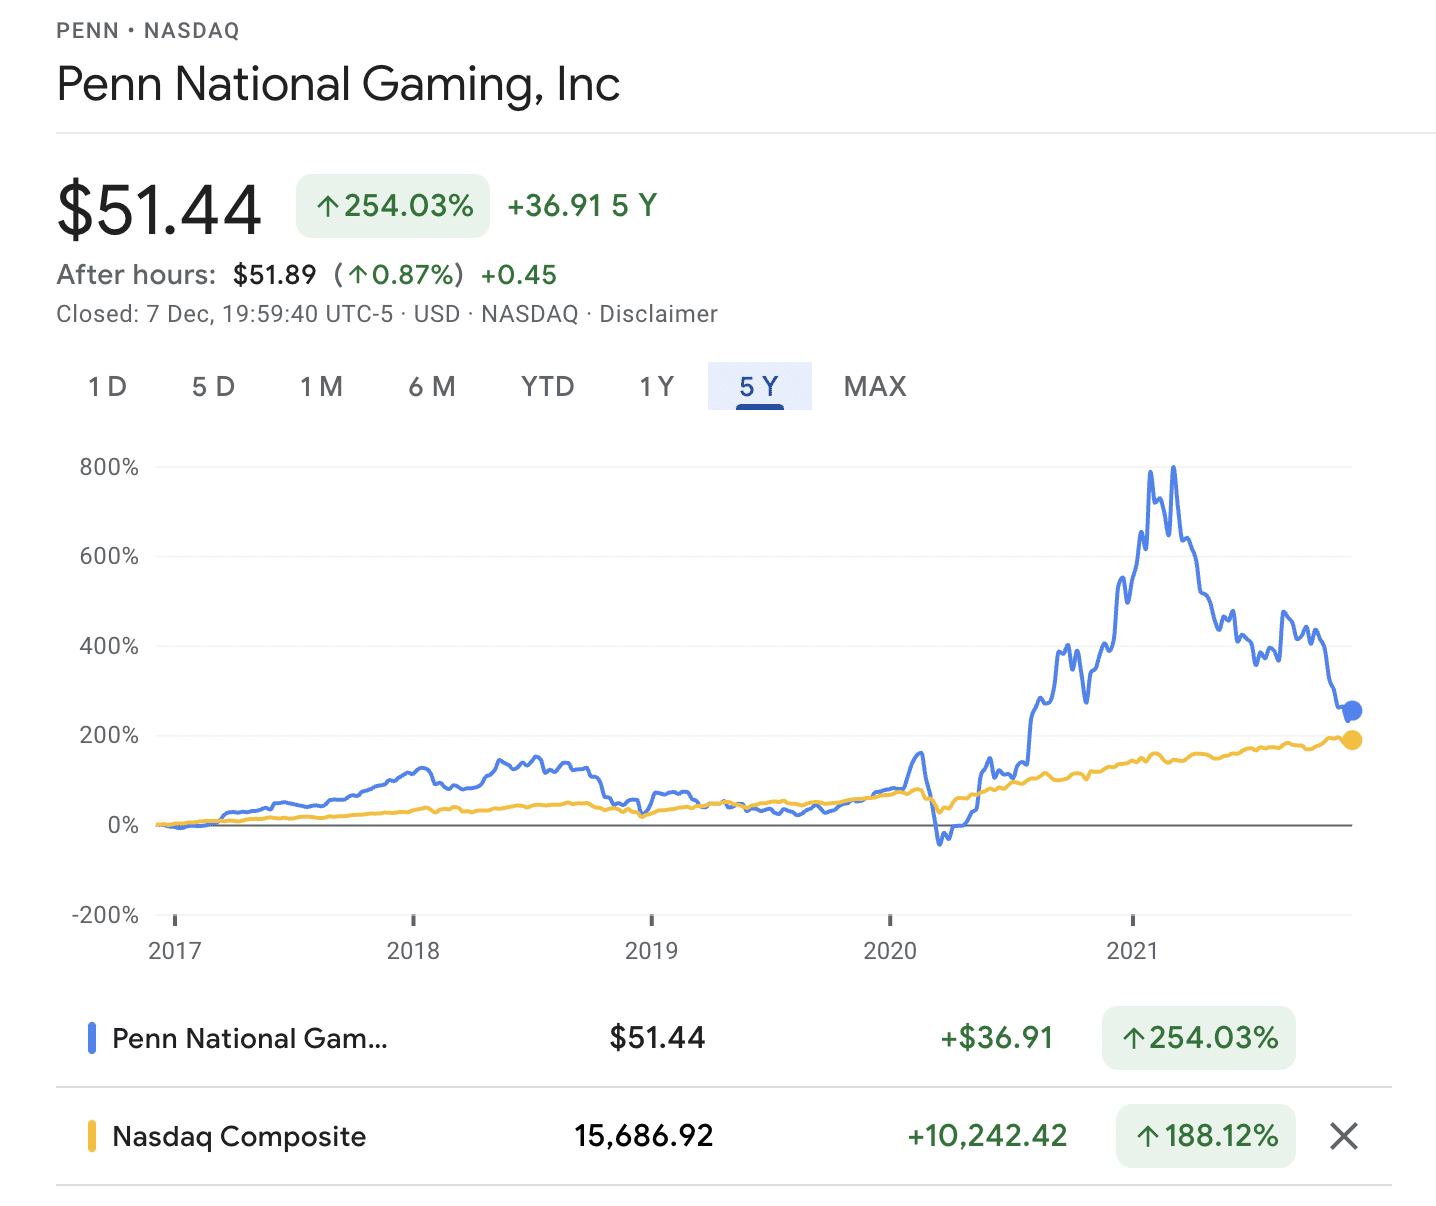 PENN • NASDAQ Penn National Gaming vs NASDAQ